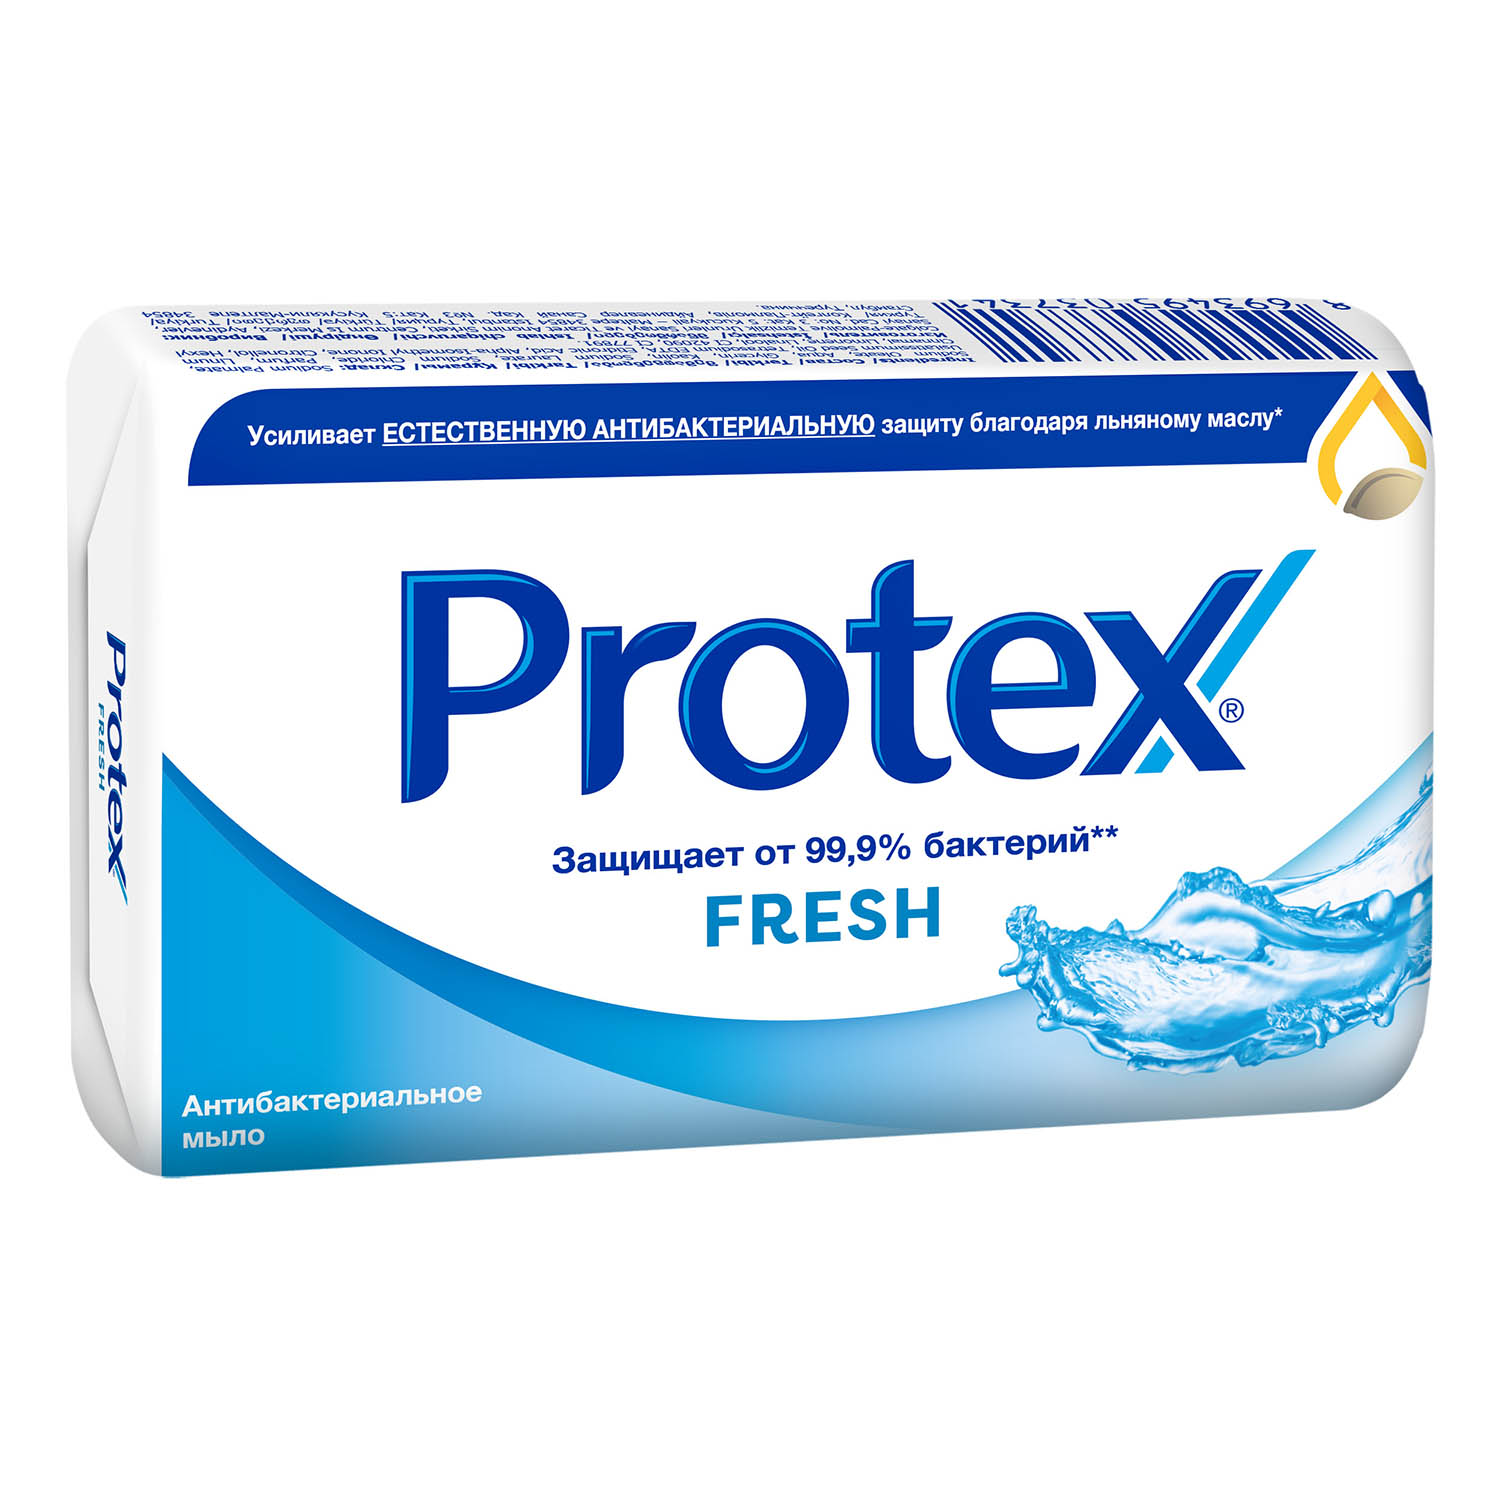 Мыло туалетное Protex Fresh антибактериальное, 90 г мыло protex cream антибактериальное 90 г